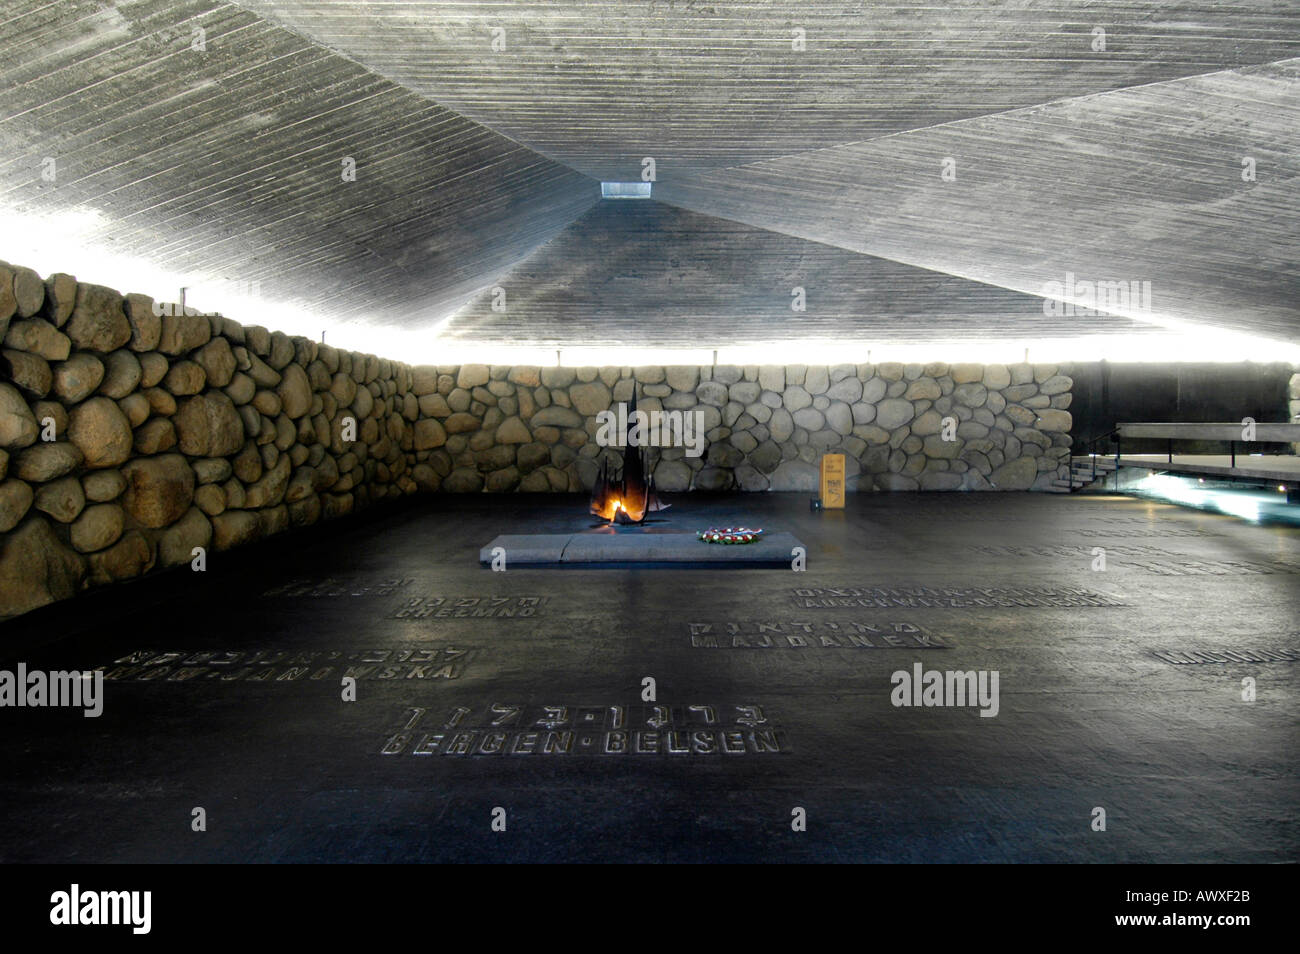 Die Flamme und die Halle der Erinnerung mit vernichtungslagern Namen in Yad Vashem Gedenkstätte für den Holocaust in Jerusalem Israel Stockfoto